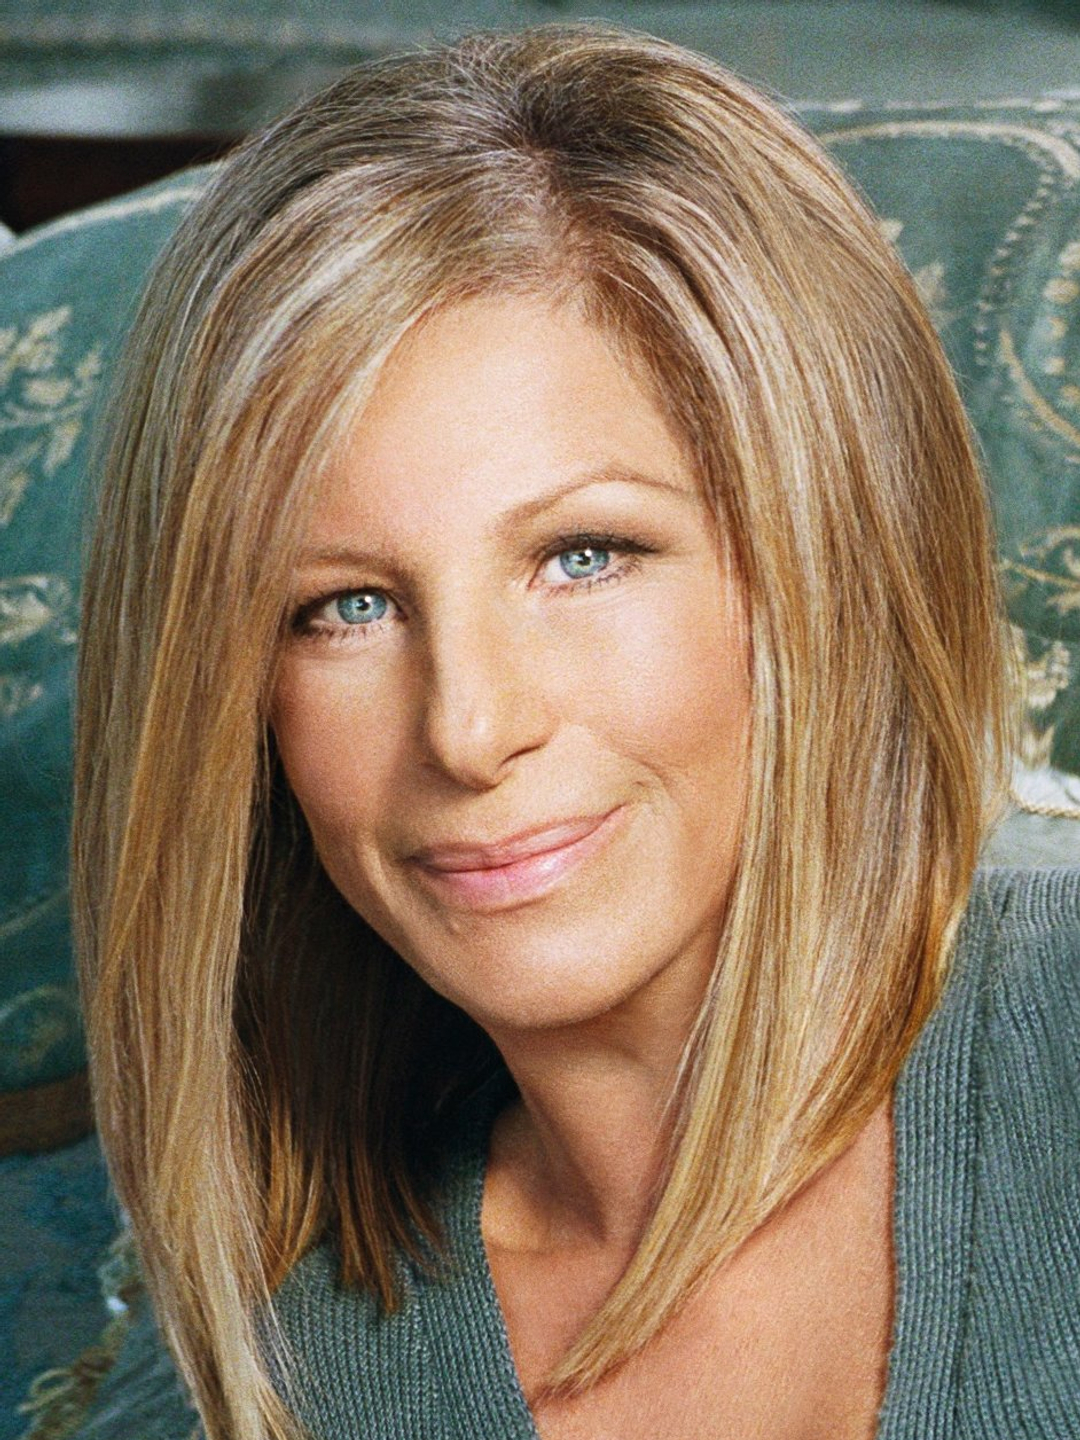 Barbra Streisand who is she